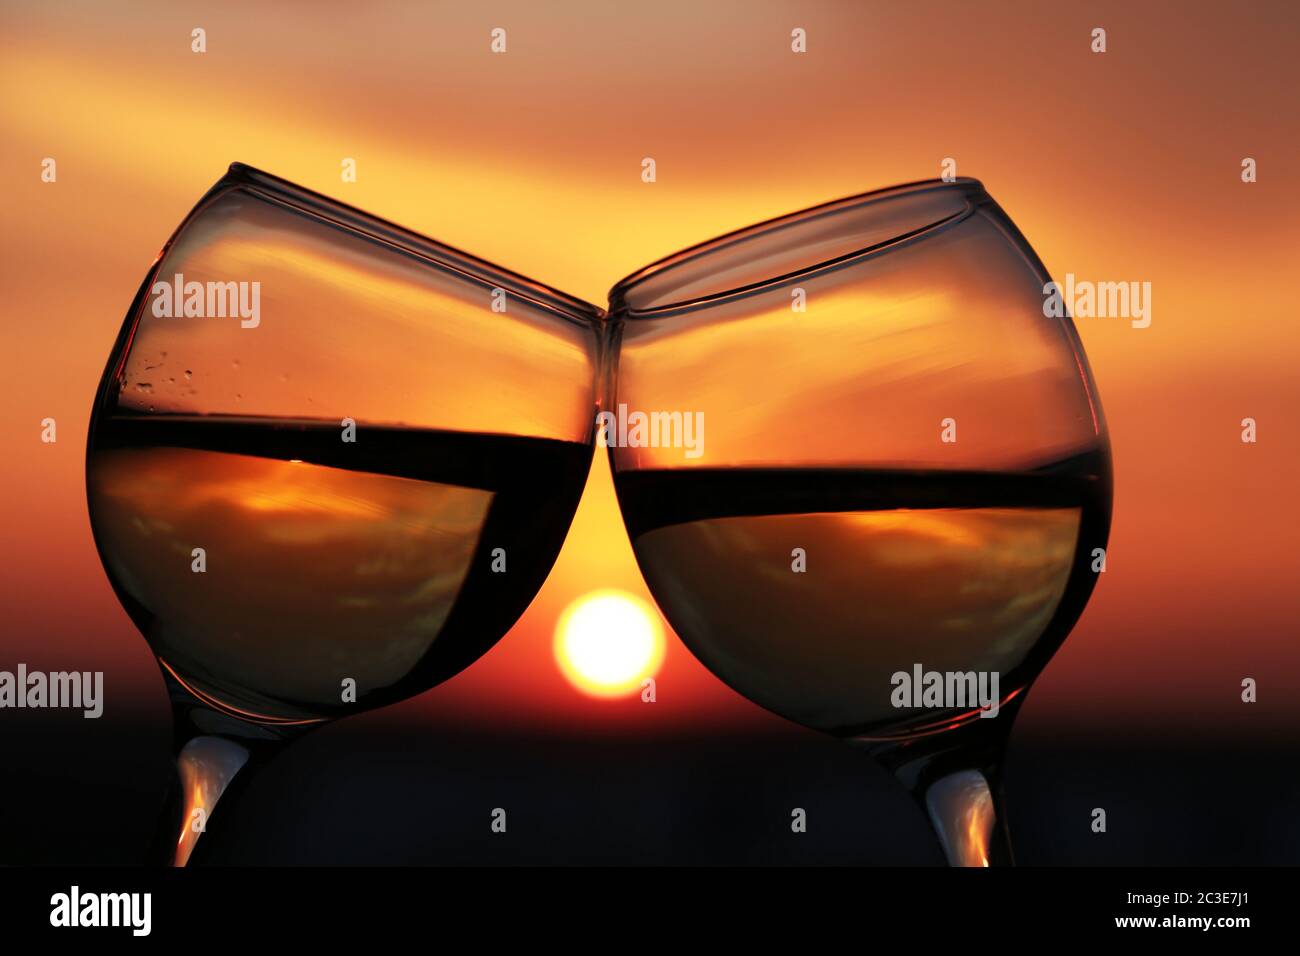 Due bicchieri con vino bianco sullo sfondo del tramonto, il sole serale si riflette in un bicchiere. Concetto di celebrazione, serata romantica, data d'amore Foto Stock